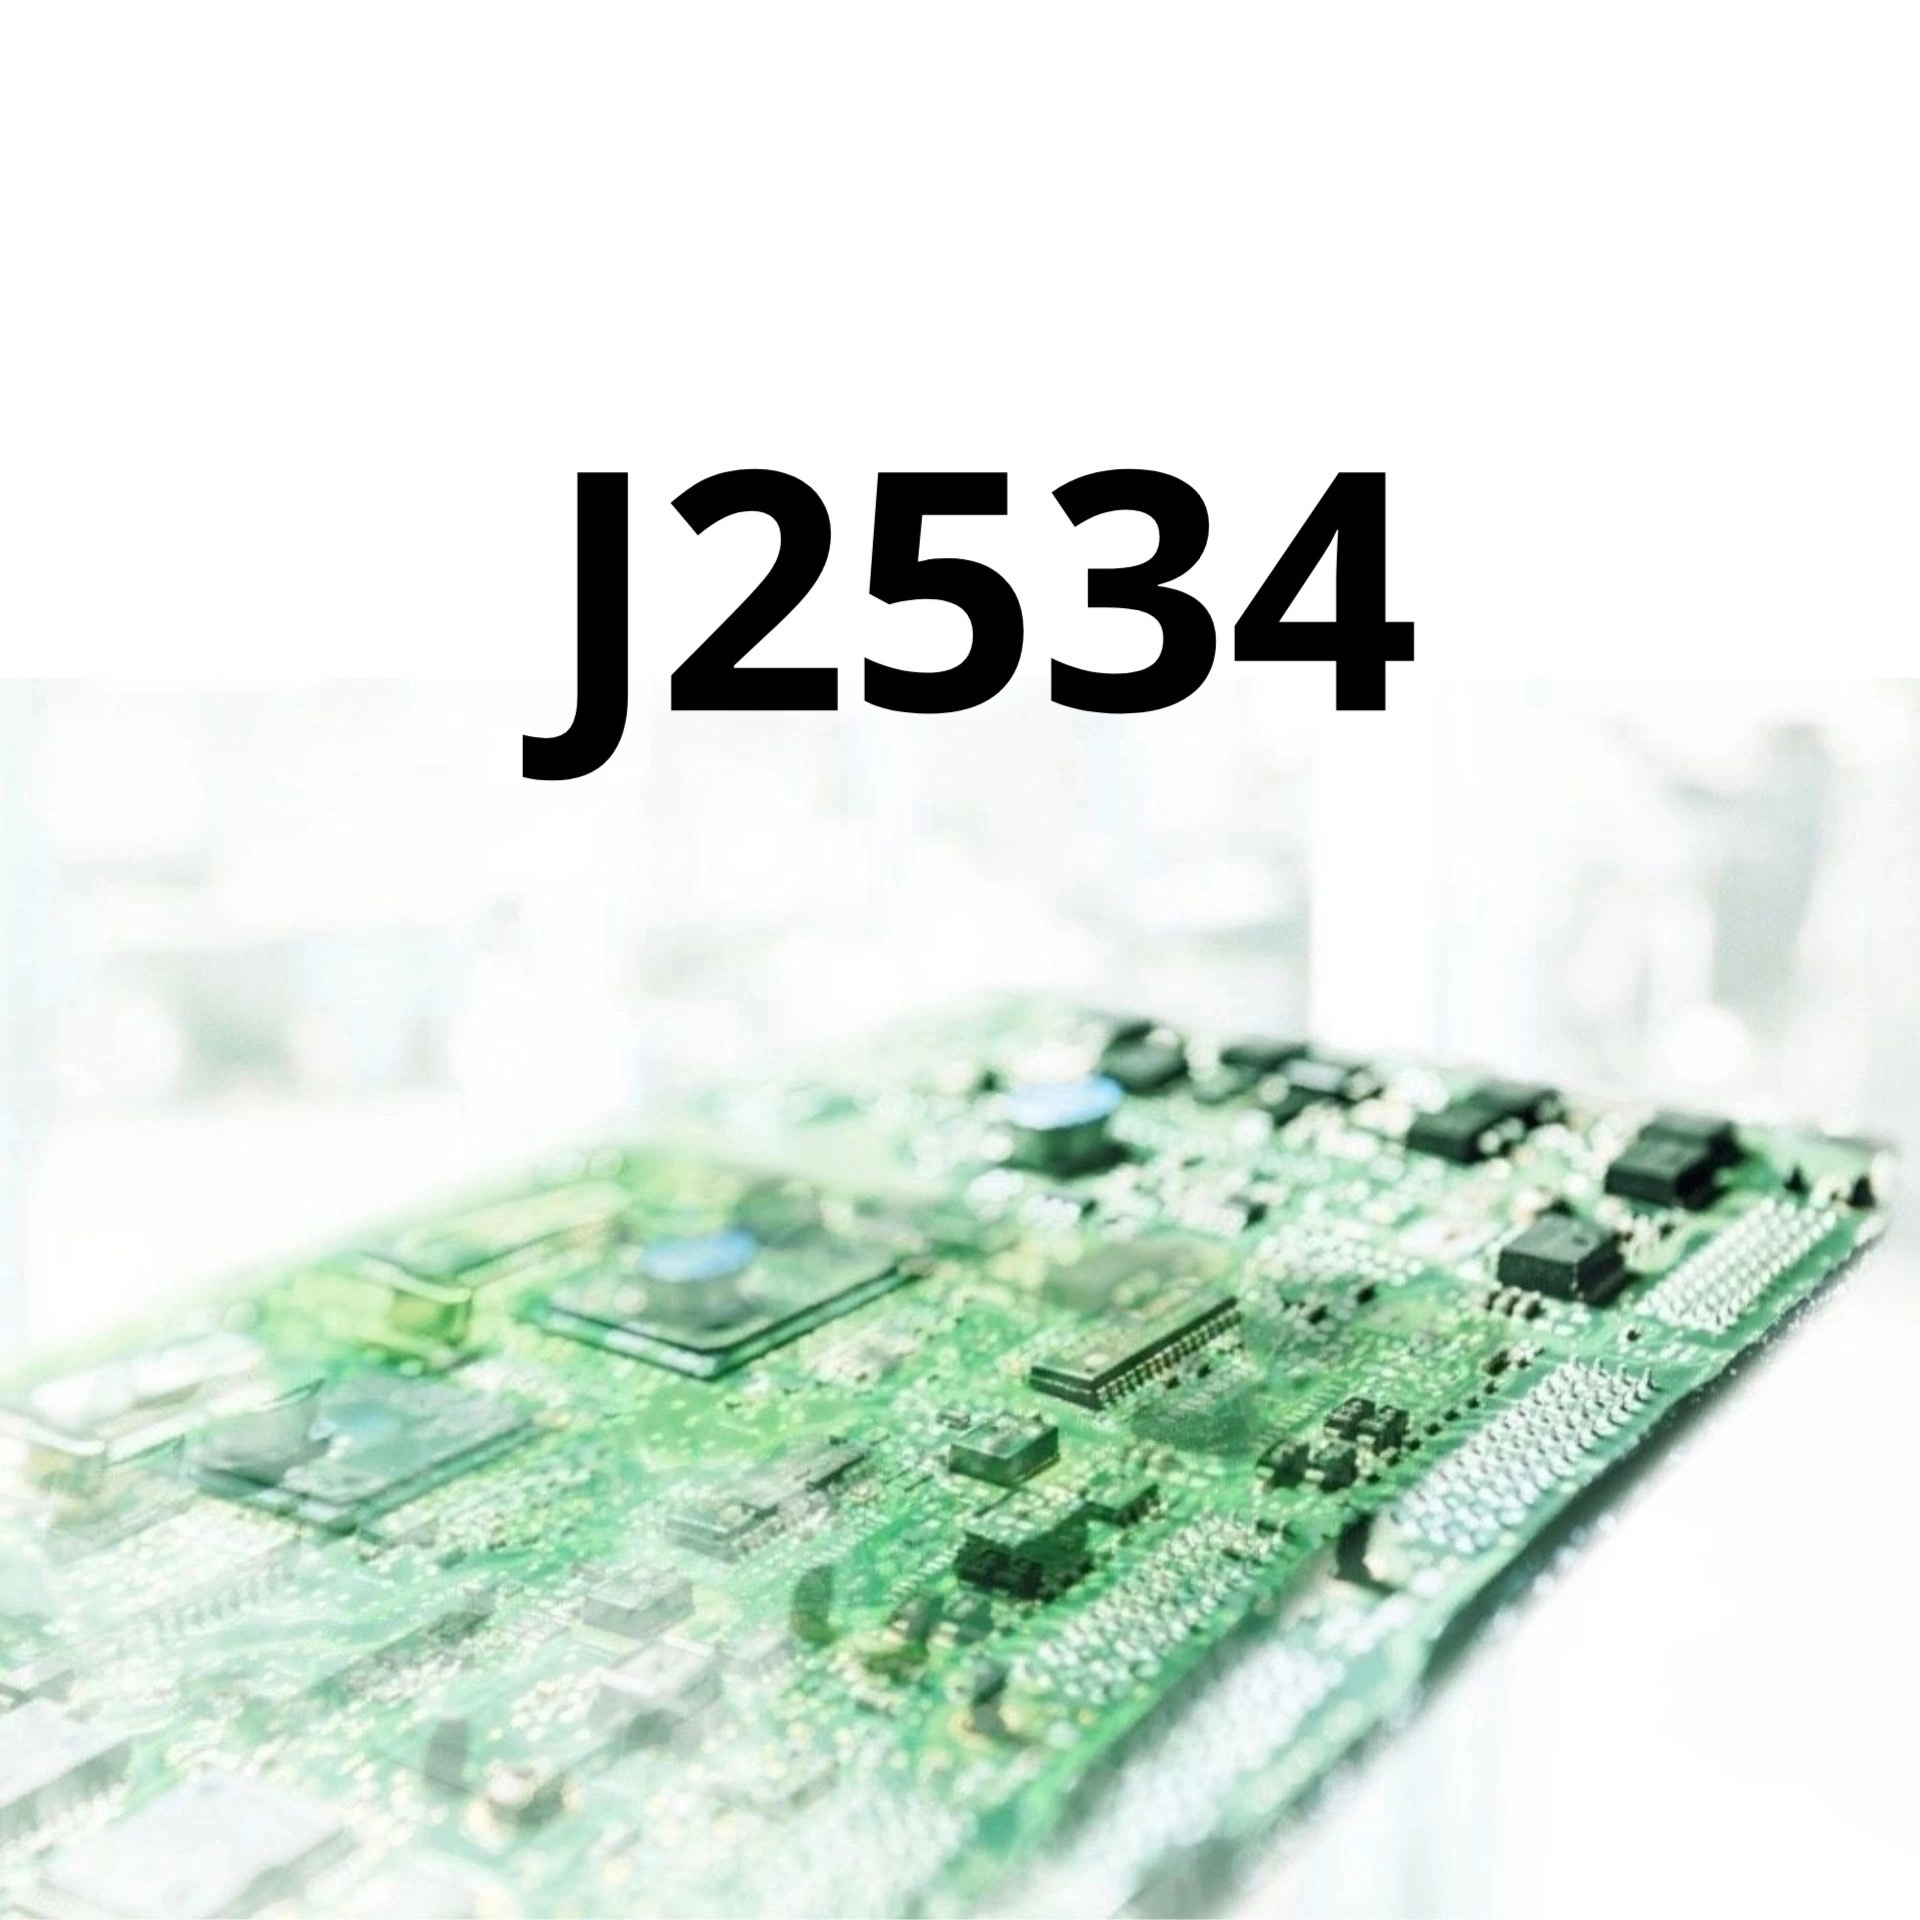 J2534. Что это? Какие устройства и программы поддерживают?